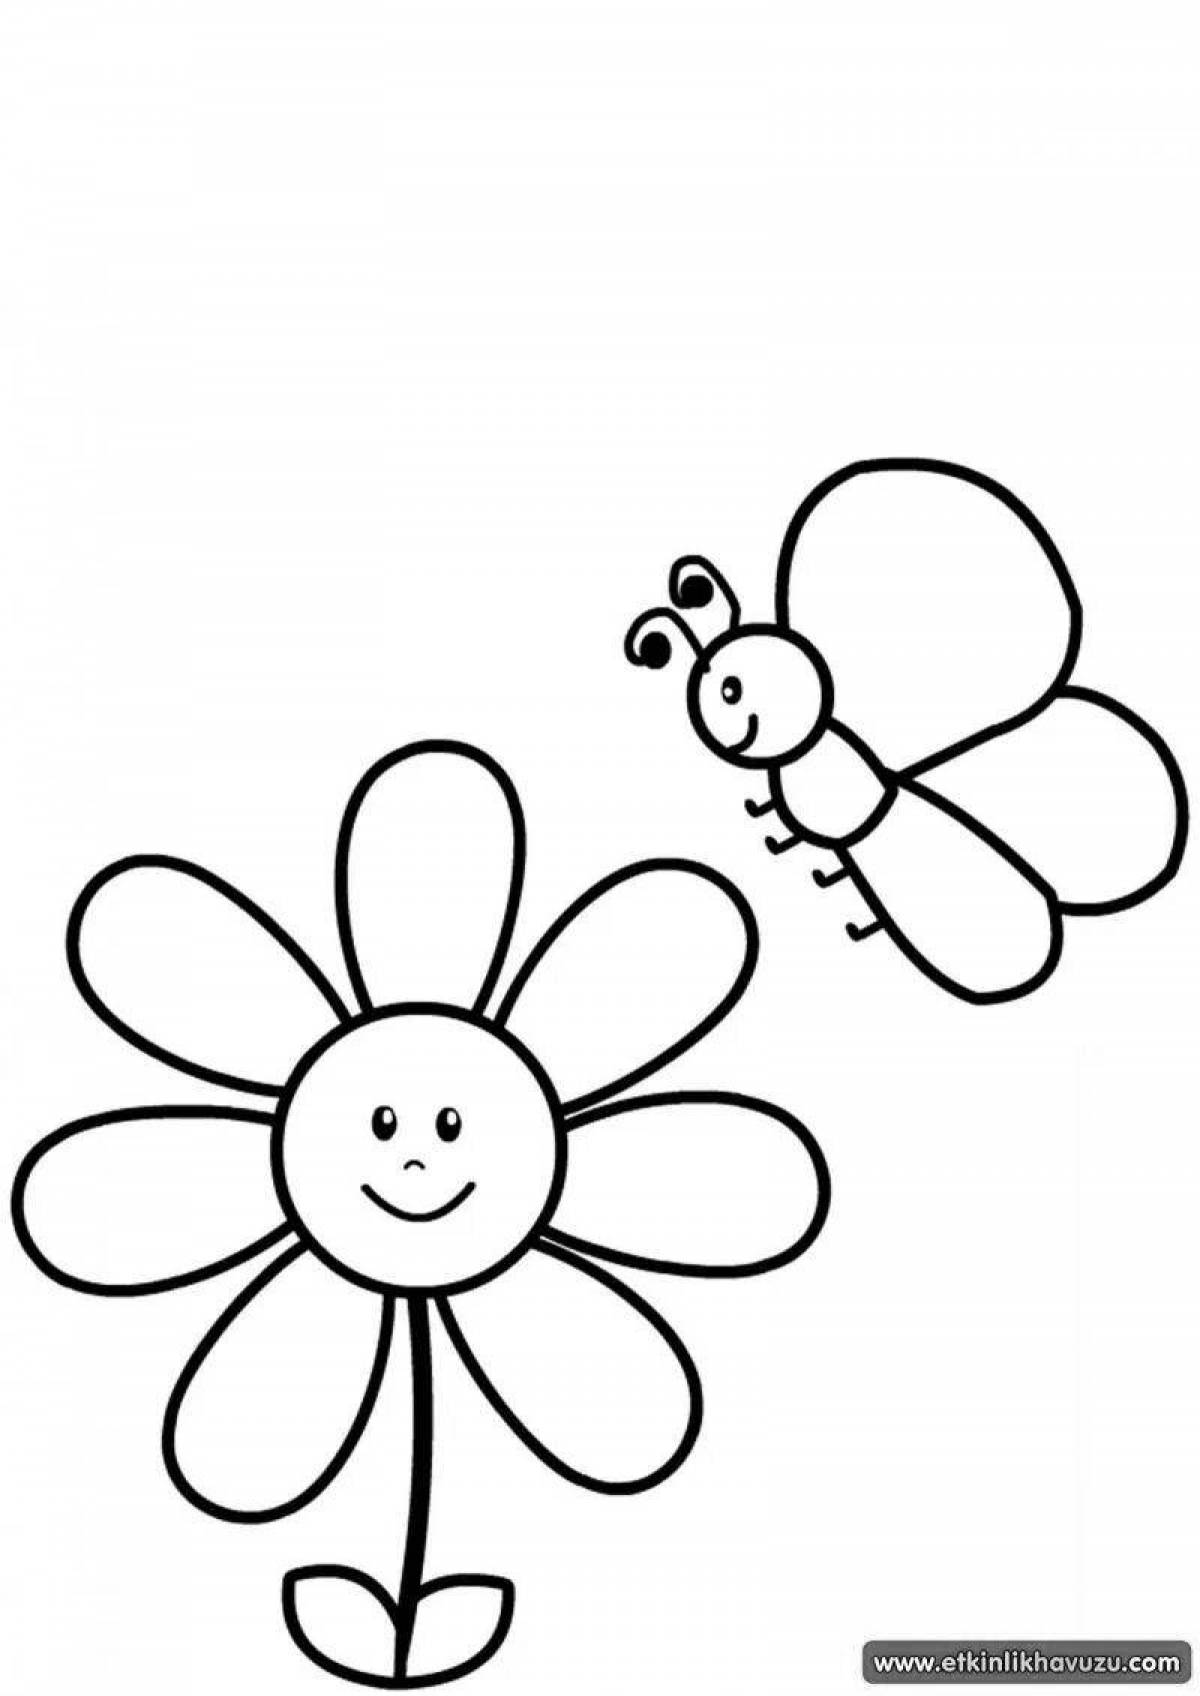 Великолепная раскраска цветок семицветик для детей 3-4 лет